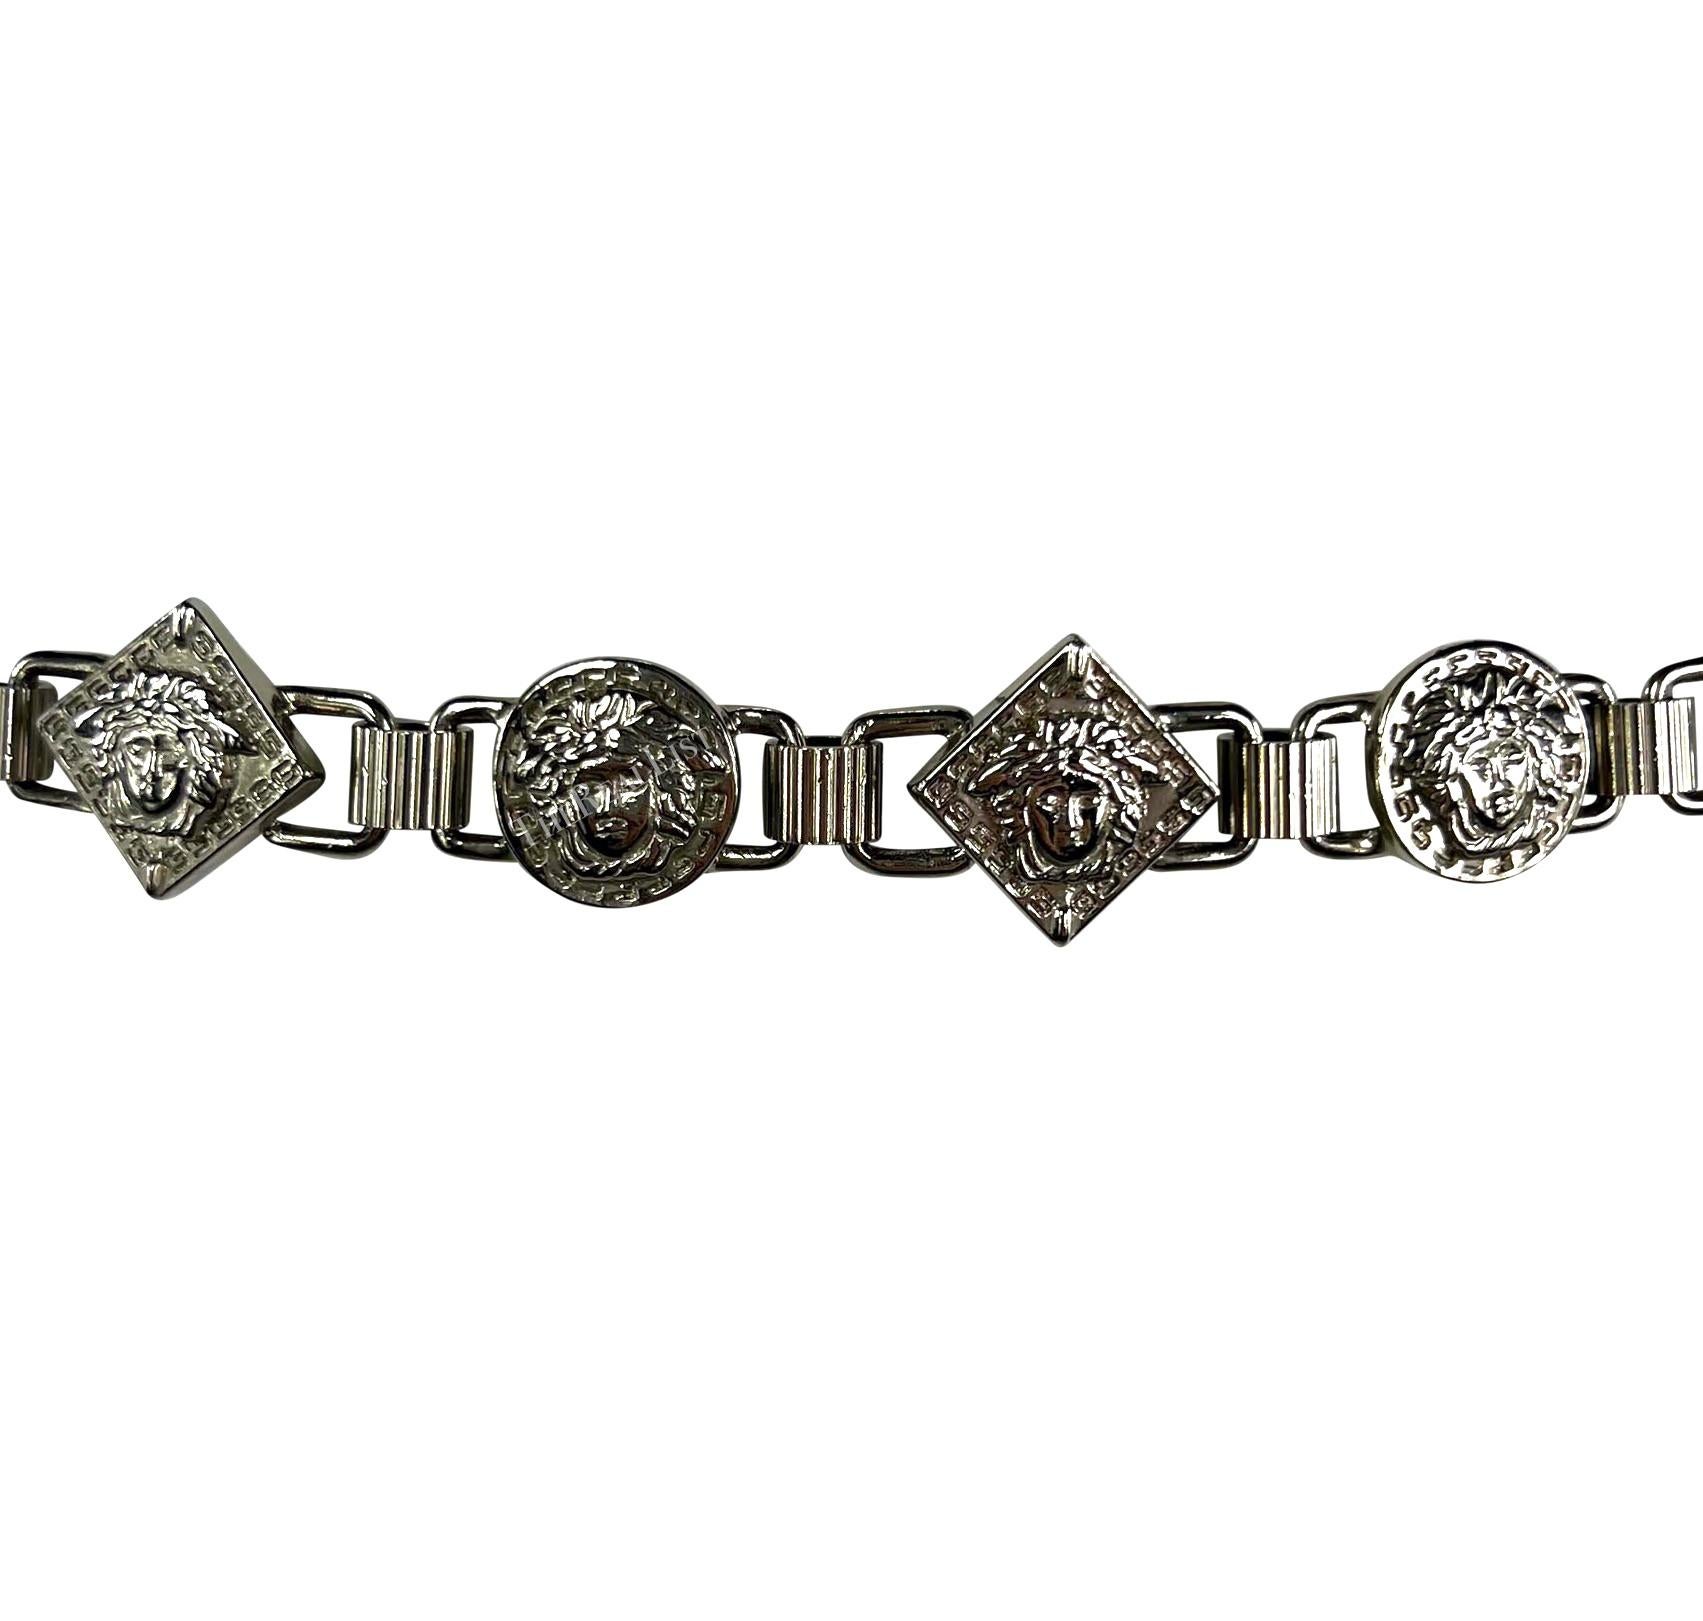 Dans les années 1990, Gianni Versace a créé cette ceinture en métal argenté pour son label éponyme. La ceinture présente une alternance de reliefs de Méduse en forme de diamant et de cercle sur un motif de maillons de chaîne. Il comprend également